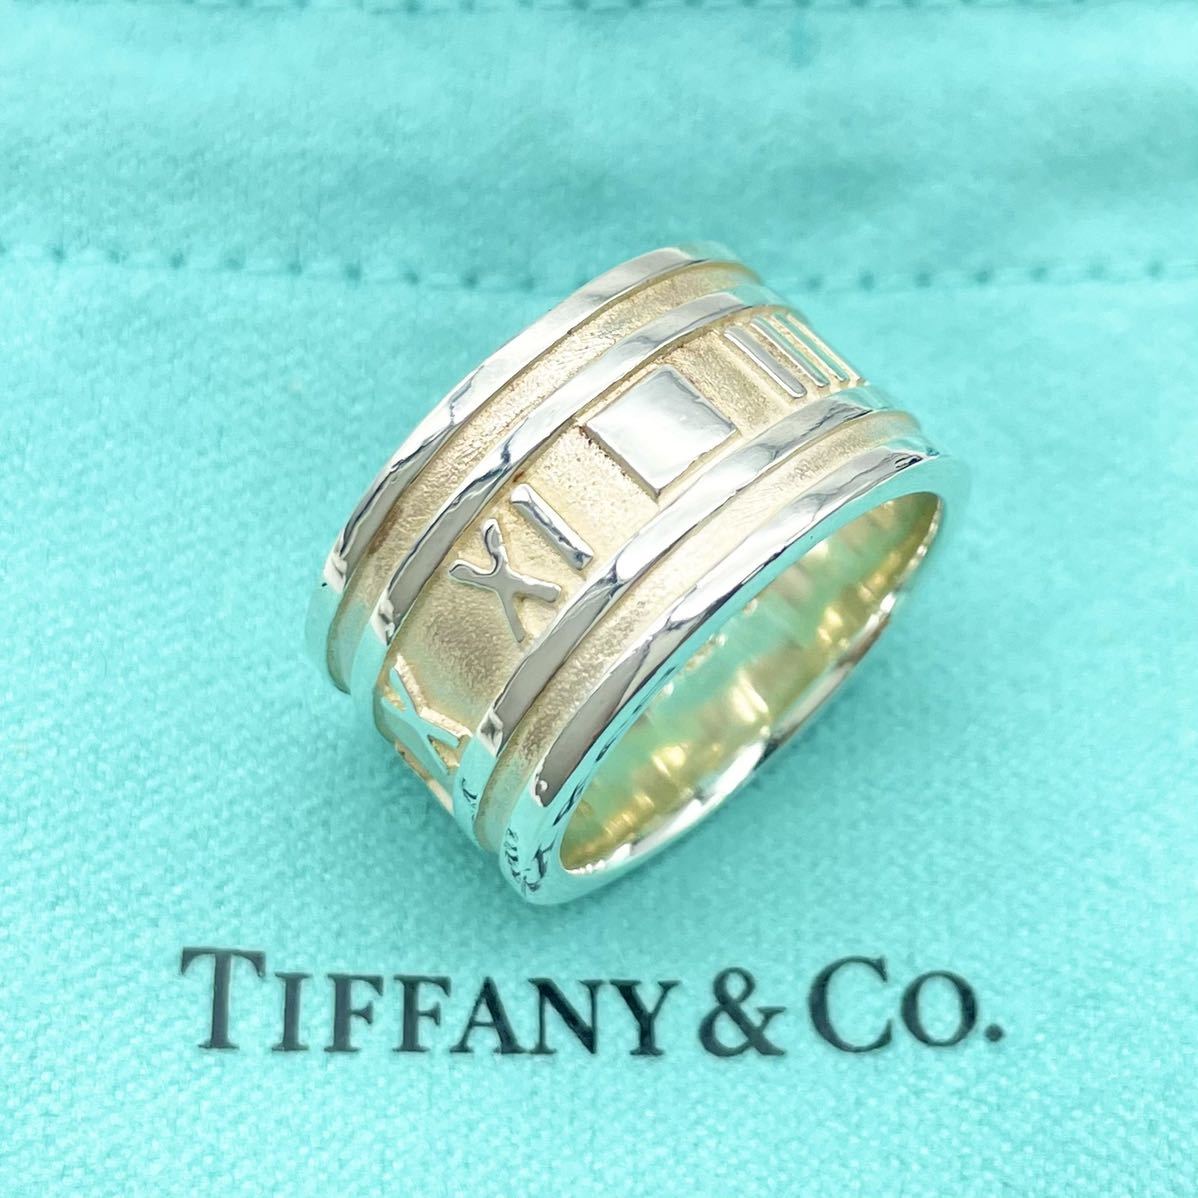 にならない Tiffany & Co. - TIFFANY&Co. アトラス シルバーリングの通販 by チョコベビー's shop